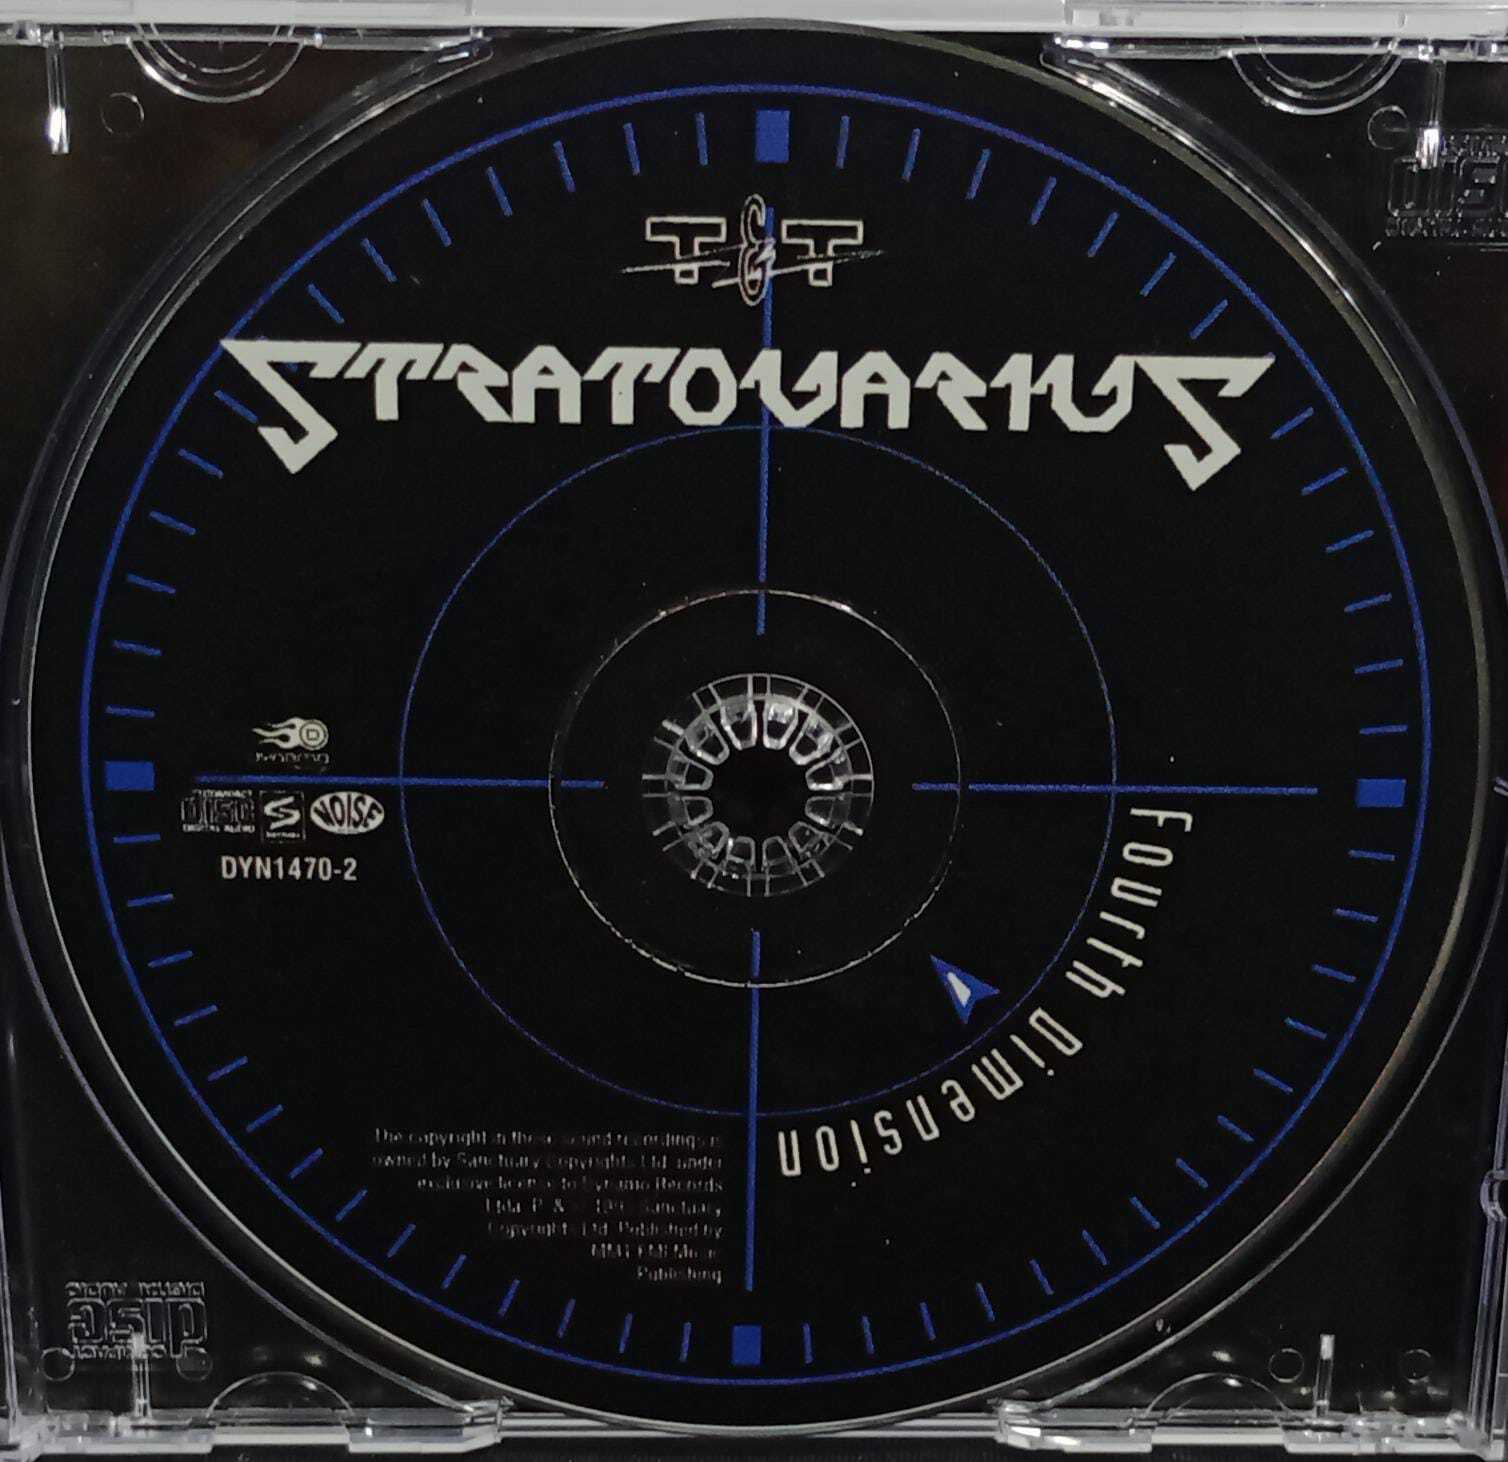 CD - Stratovarius - Fourth Dimension